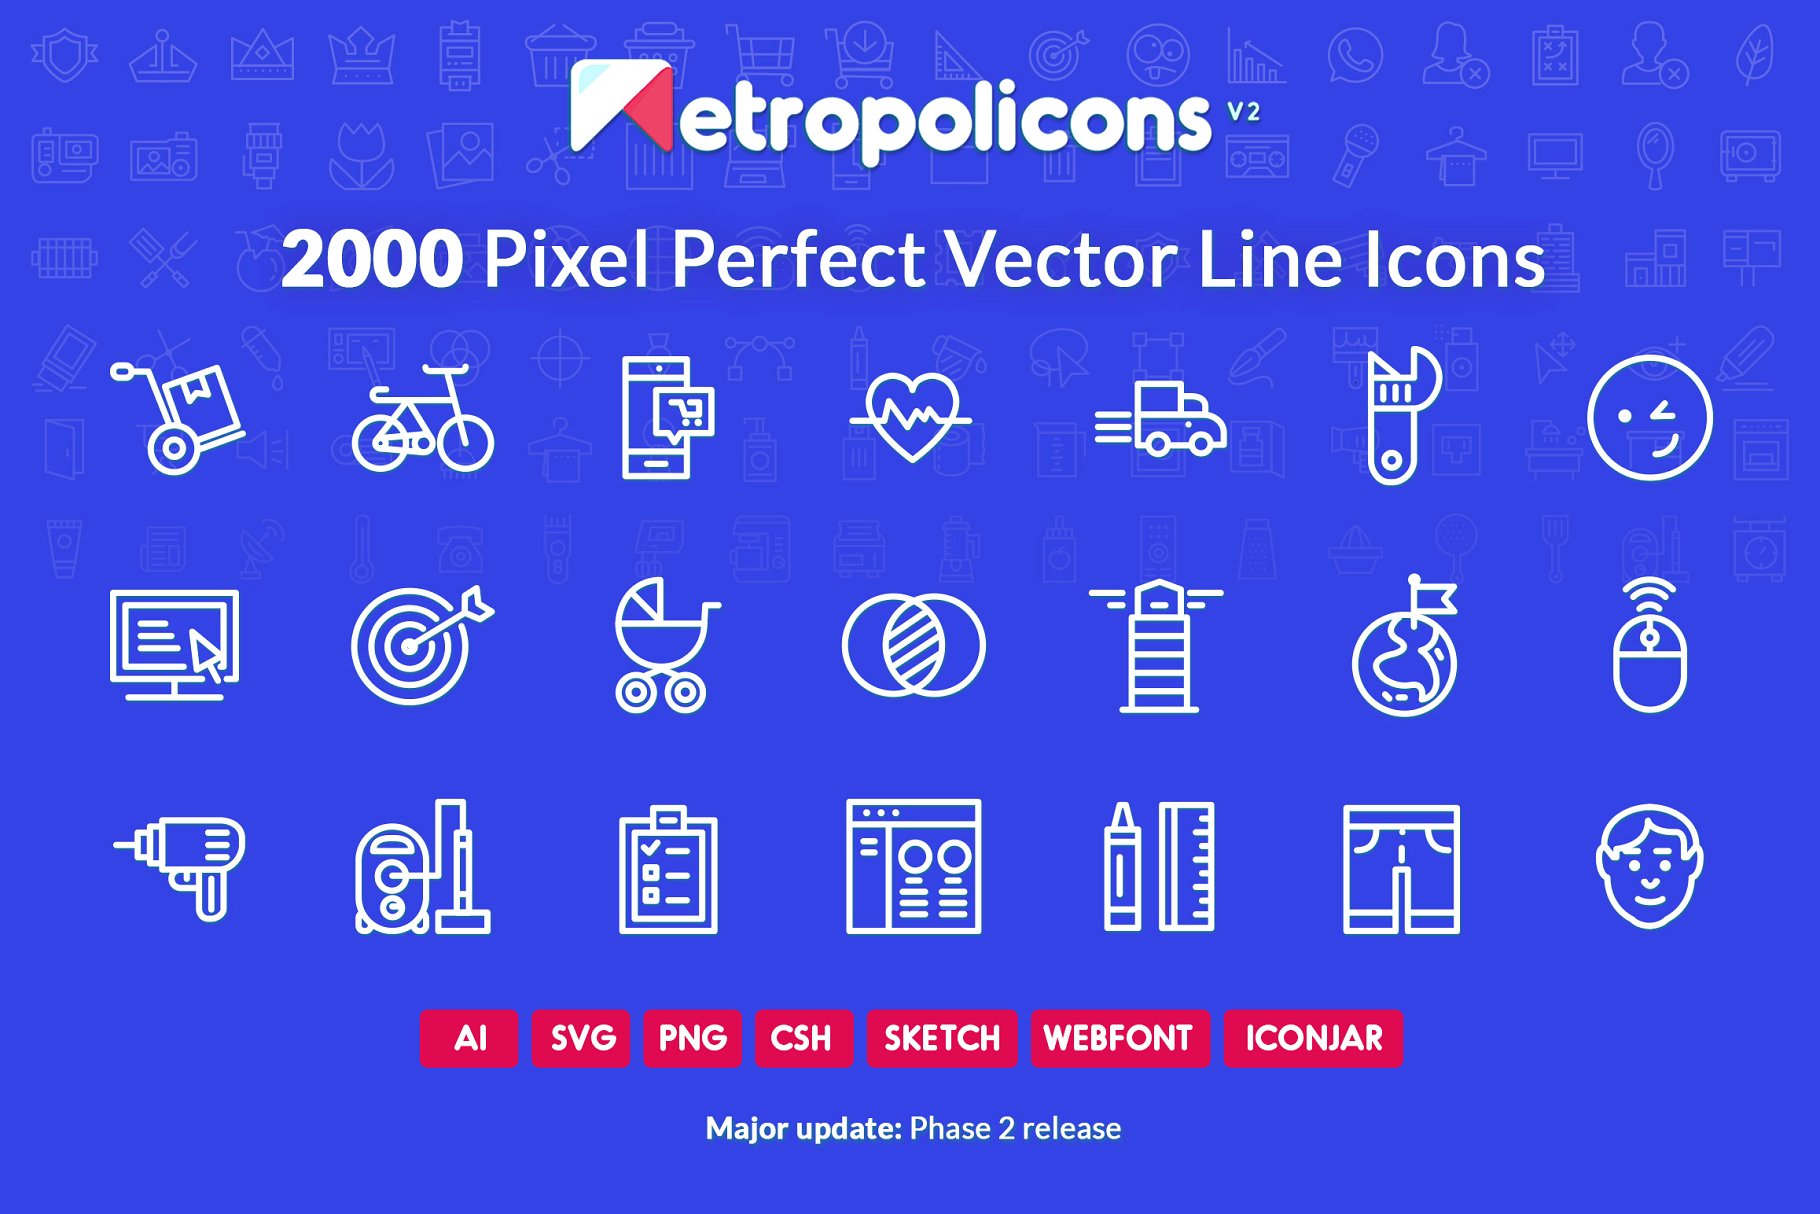 2000枚完美像素线条矢量图标 2000 Line Icons Set Metropolicons插图